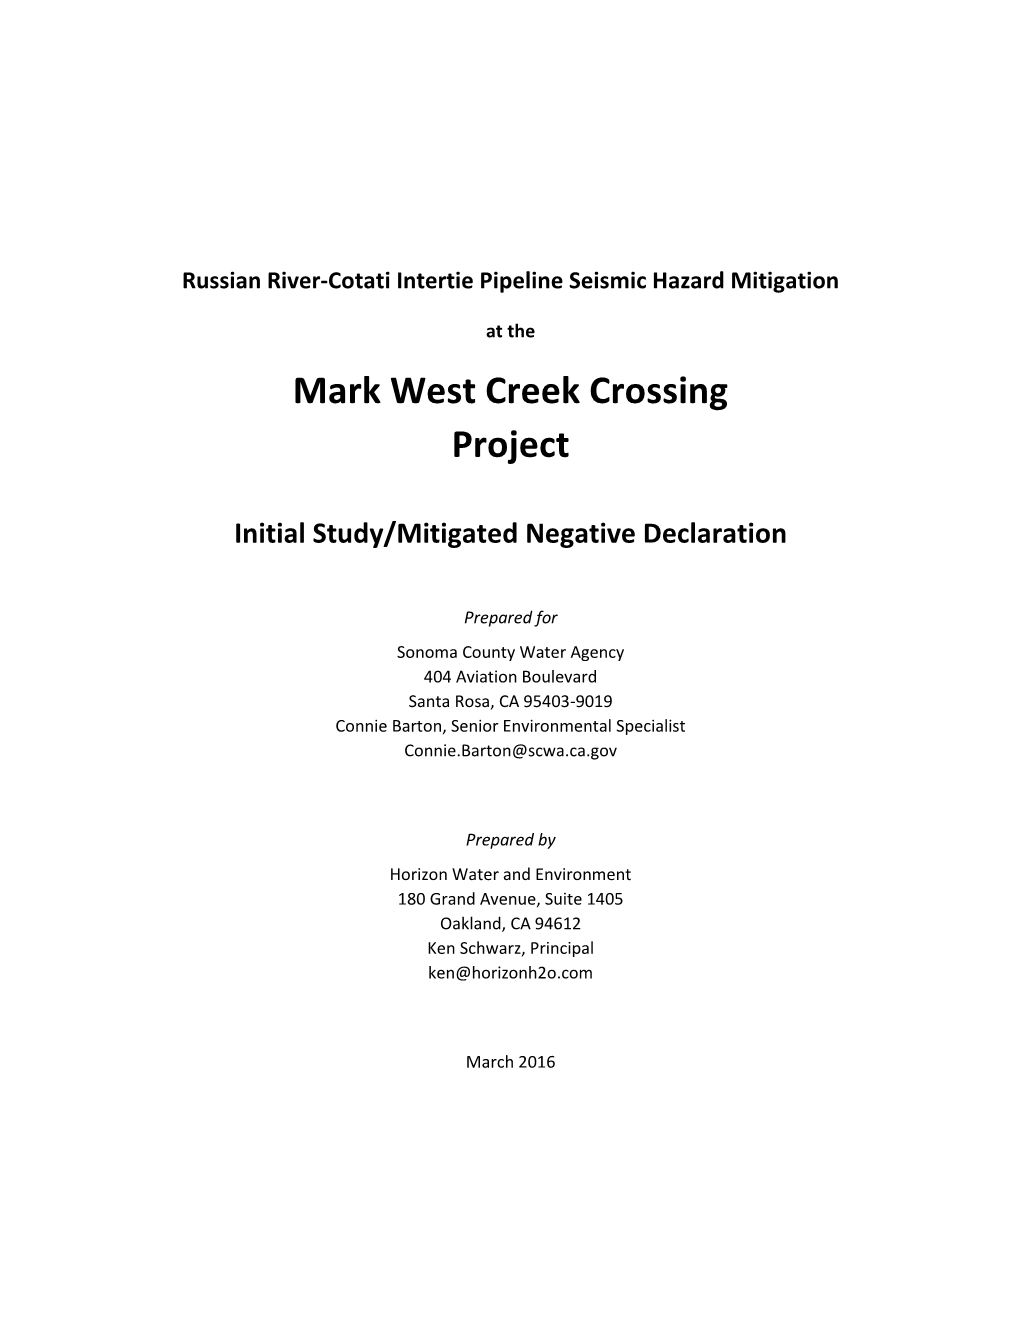 Mark West Creek Crossing Project